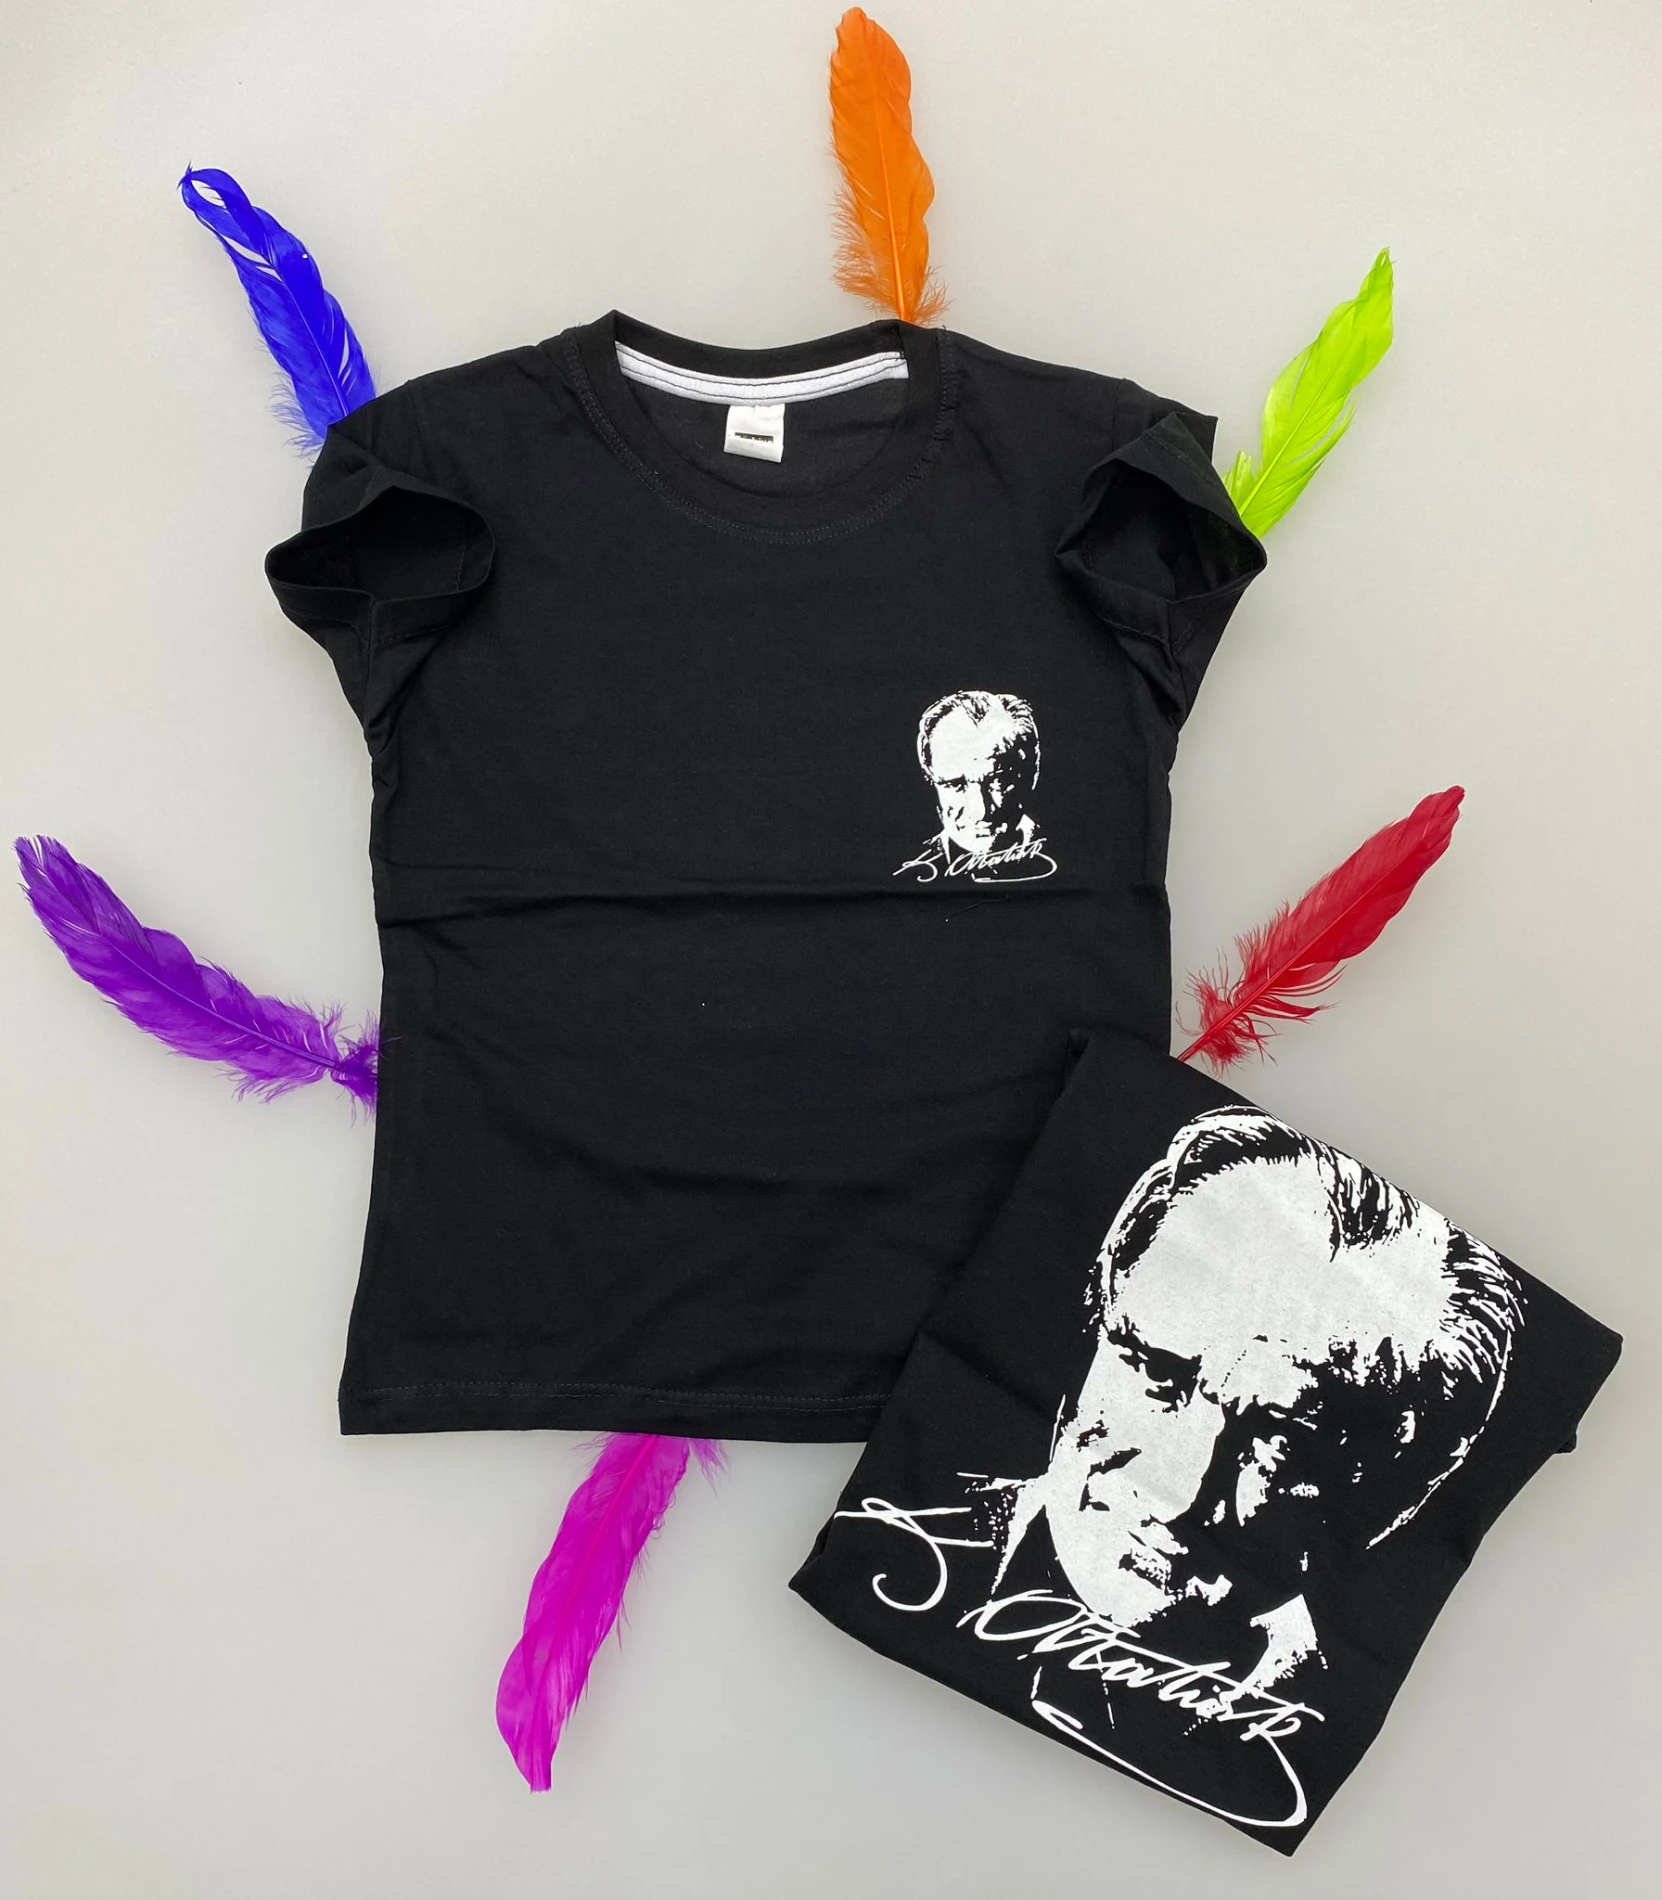 Çocuk T-shirt Mustafa Kemal Atatürk baskılı Siyah